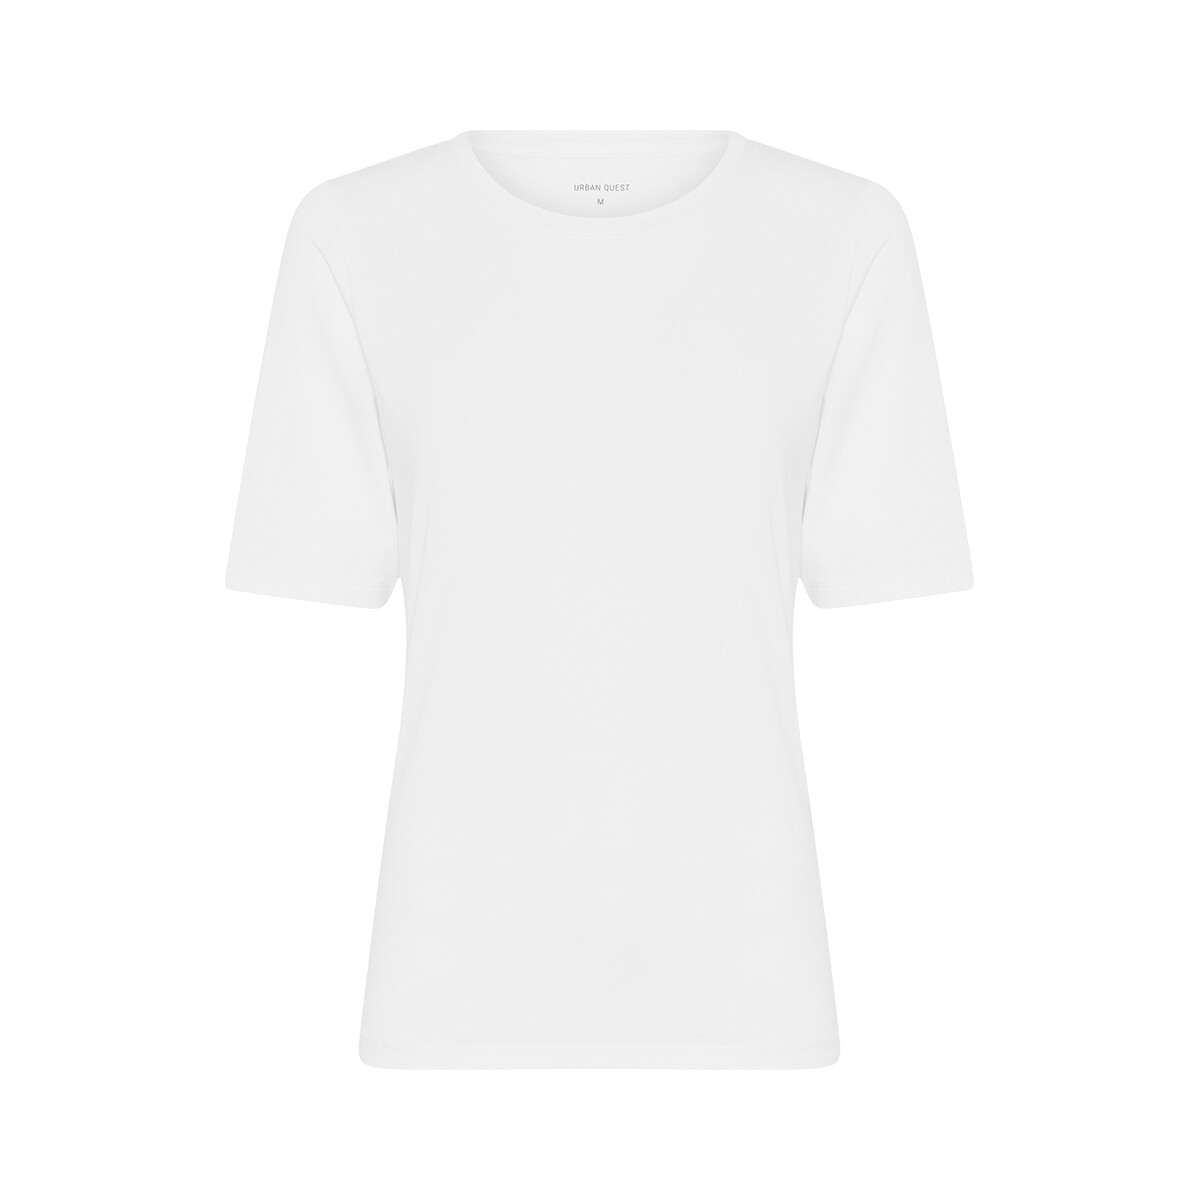 Se Urban Quest Bamboo Slim Fit T-shirt, Farve: Hvid, Størrelse: L, Dame hos Netlingeri.dk